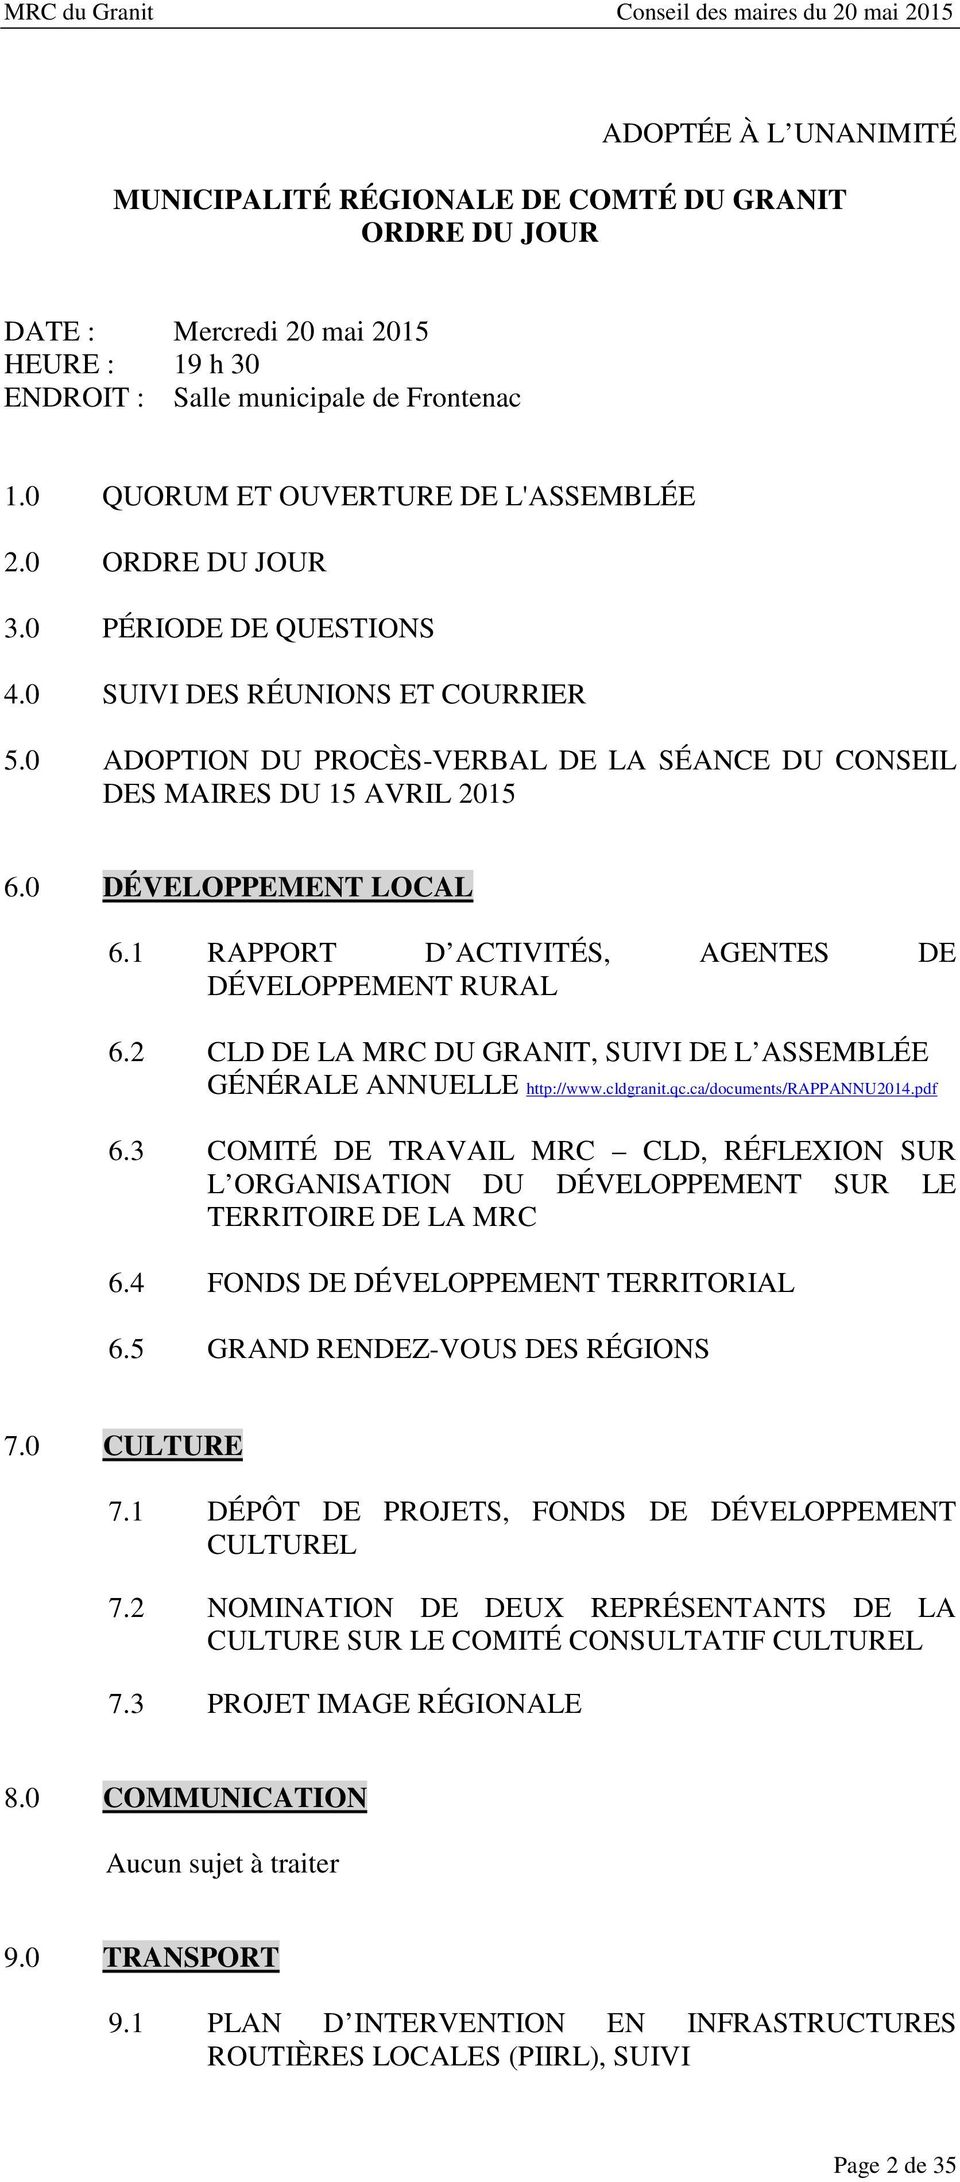 1 RAPPORT D ACTIVITÉS, AGENTES DE DÉVELOPPEMENT RURAL 6.2 CLD DE LA MRC DU GRANIT, SUIVI DE L ASSEMBLÉE GÉNÉRALE ANNUELLE http://www.cldgranit.qc.ca/documents/rappannu2014.pdf 6.